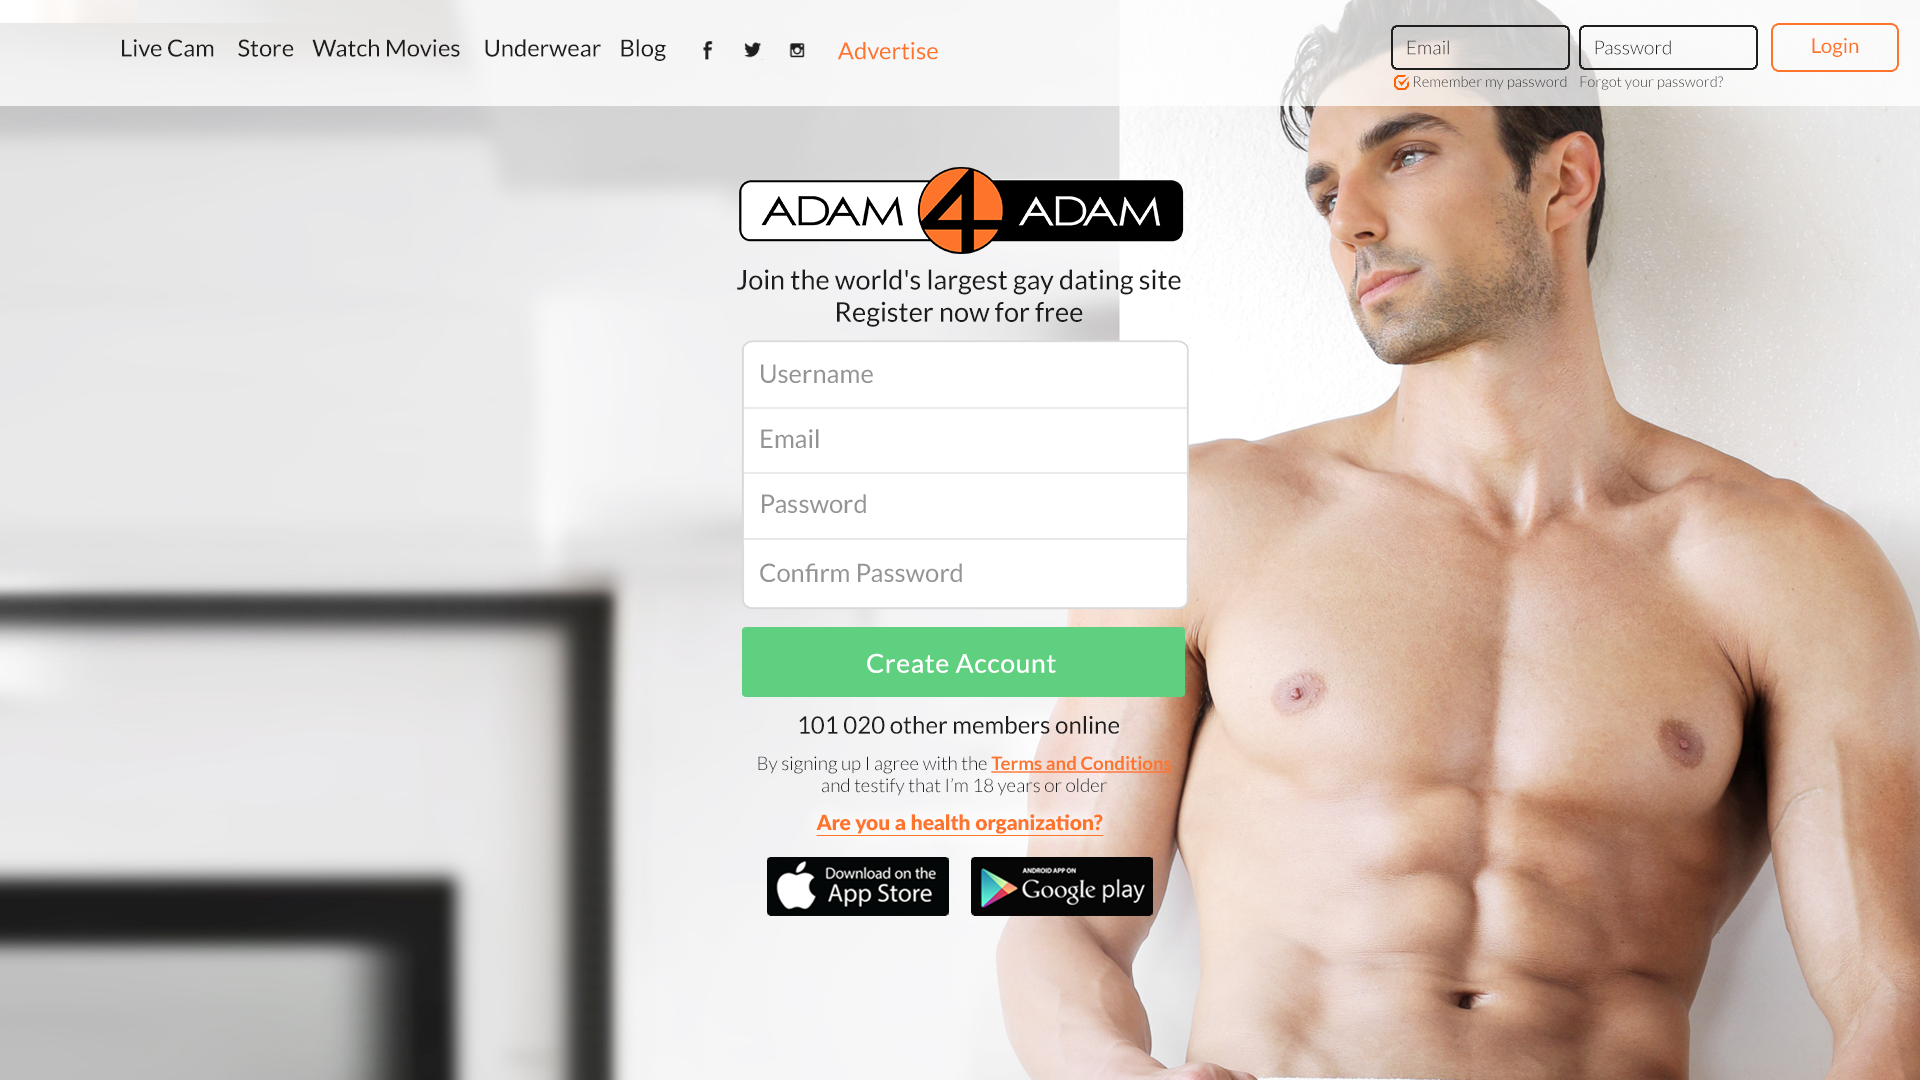 To sign up for Adam4Adam, visit Adam4Adam.com. 